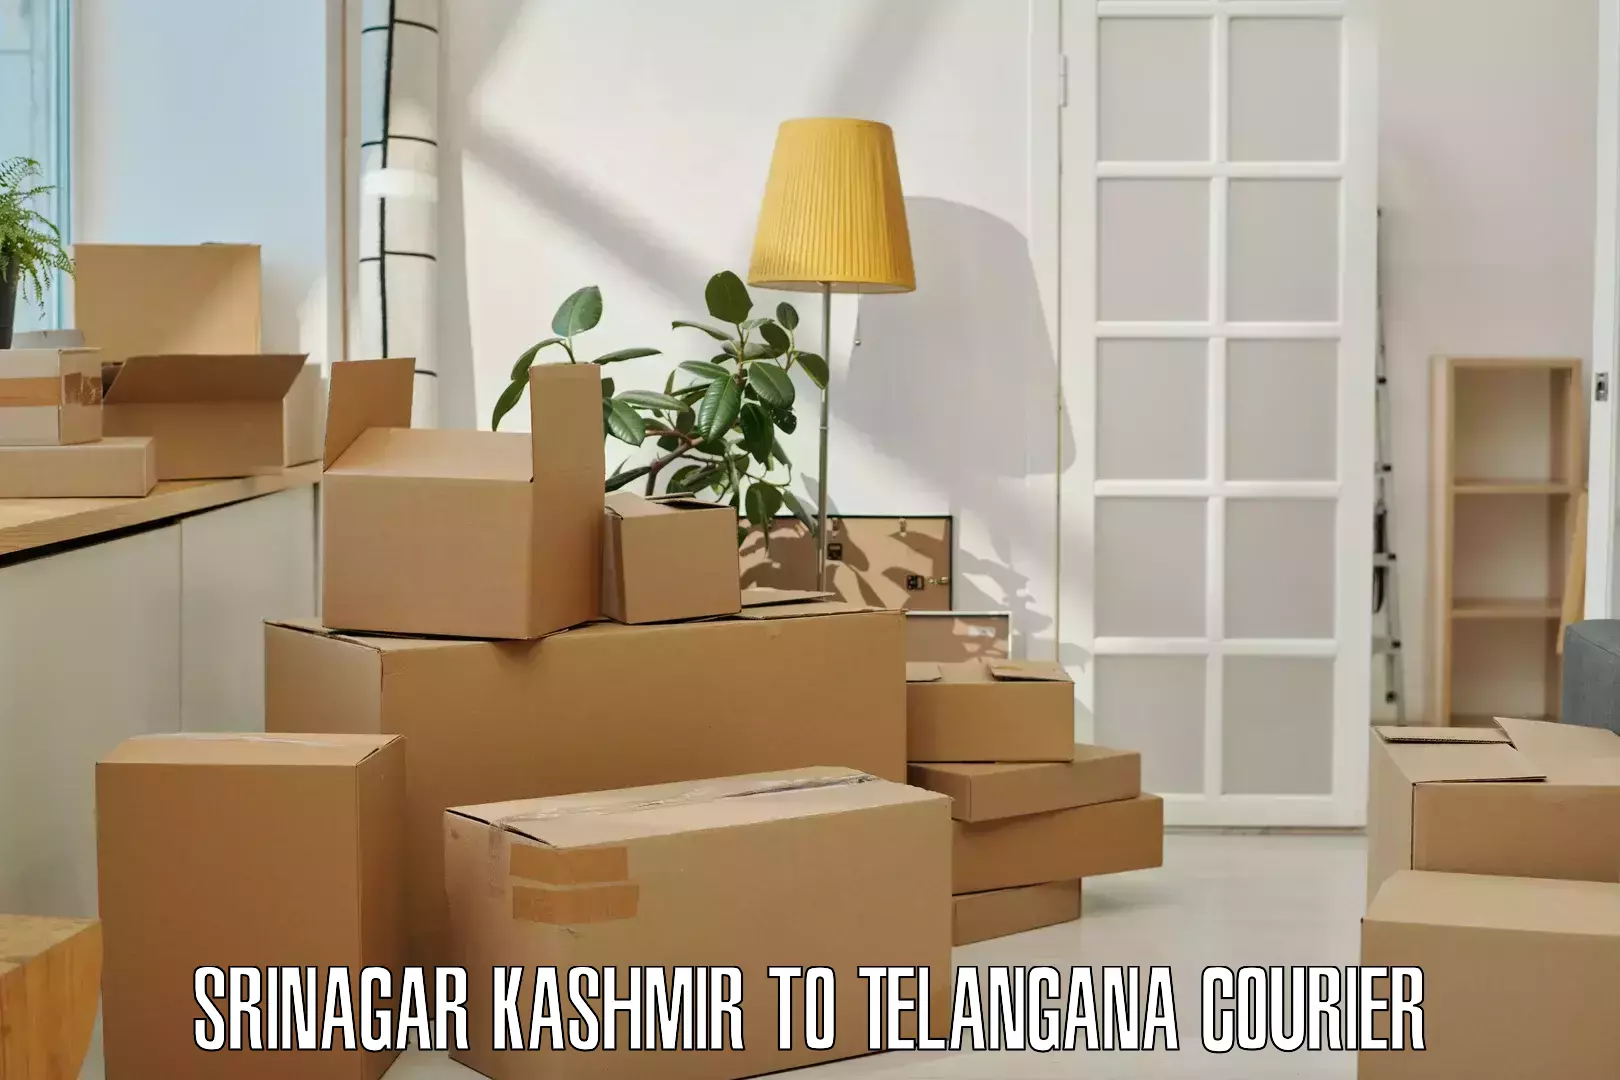 Ocean freight courier Srinagar Kashmir to Shankarpalle